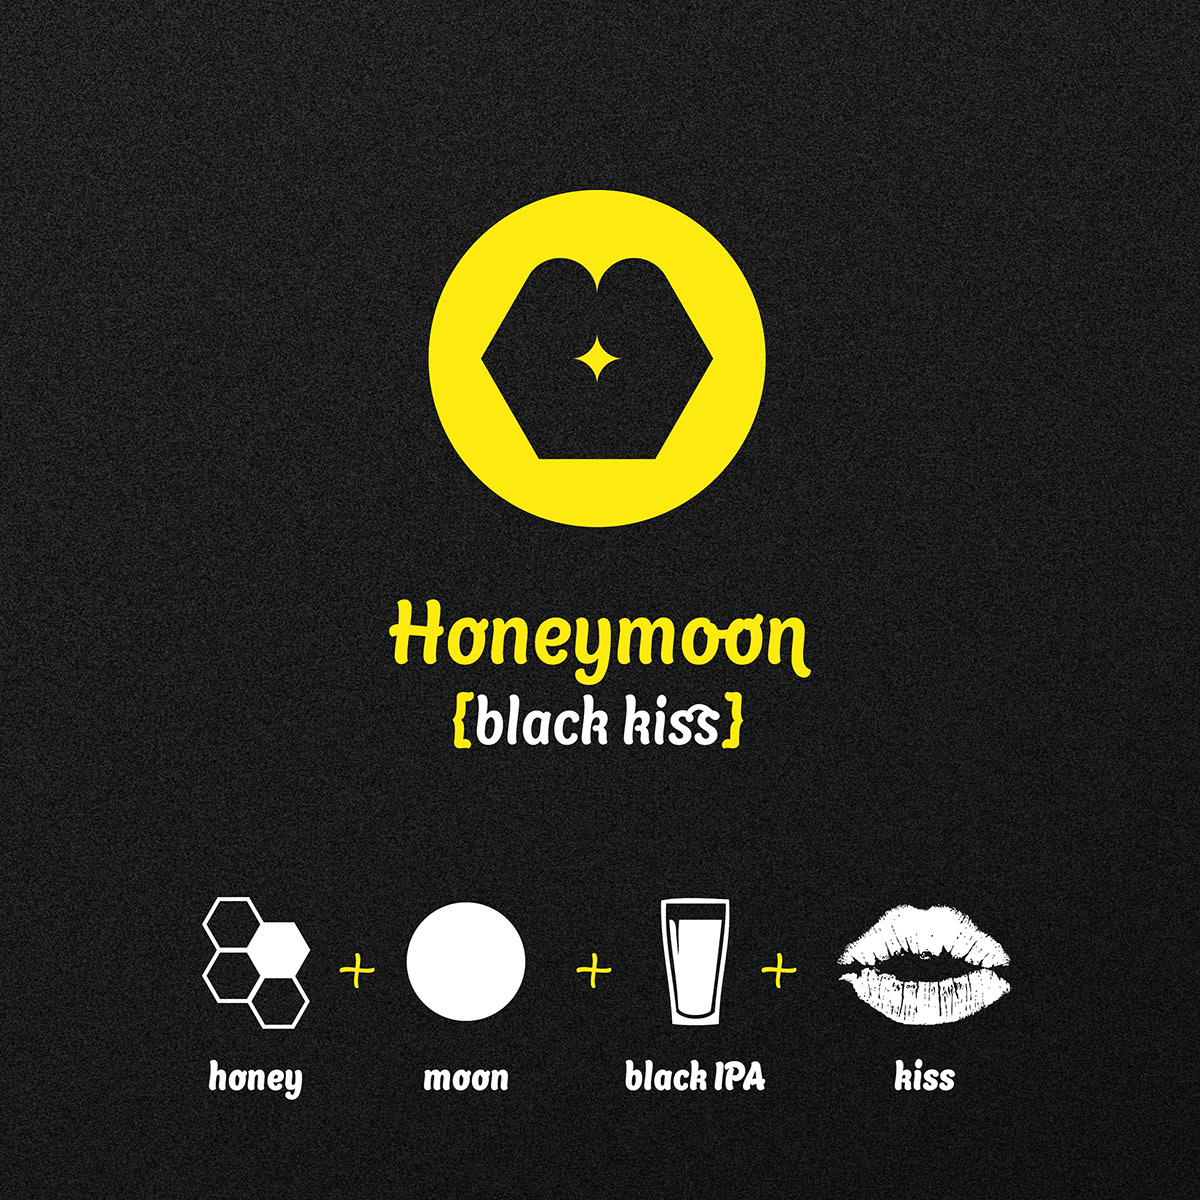 beer mekfartin homebrew IPA black honey kiss honeymoon moon